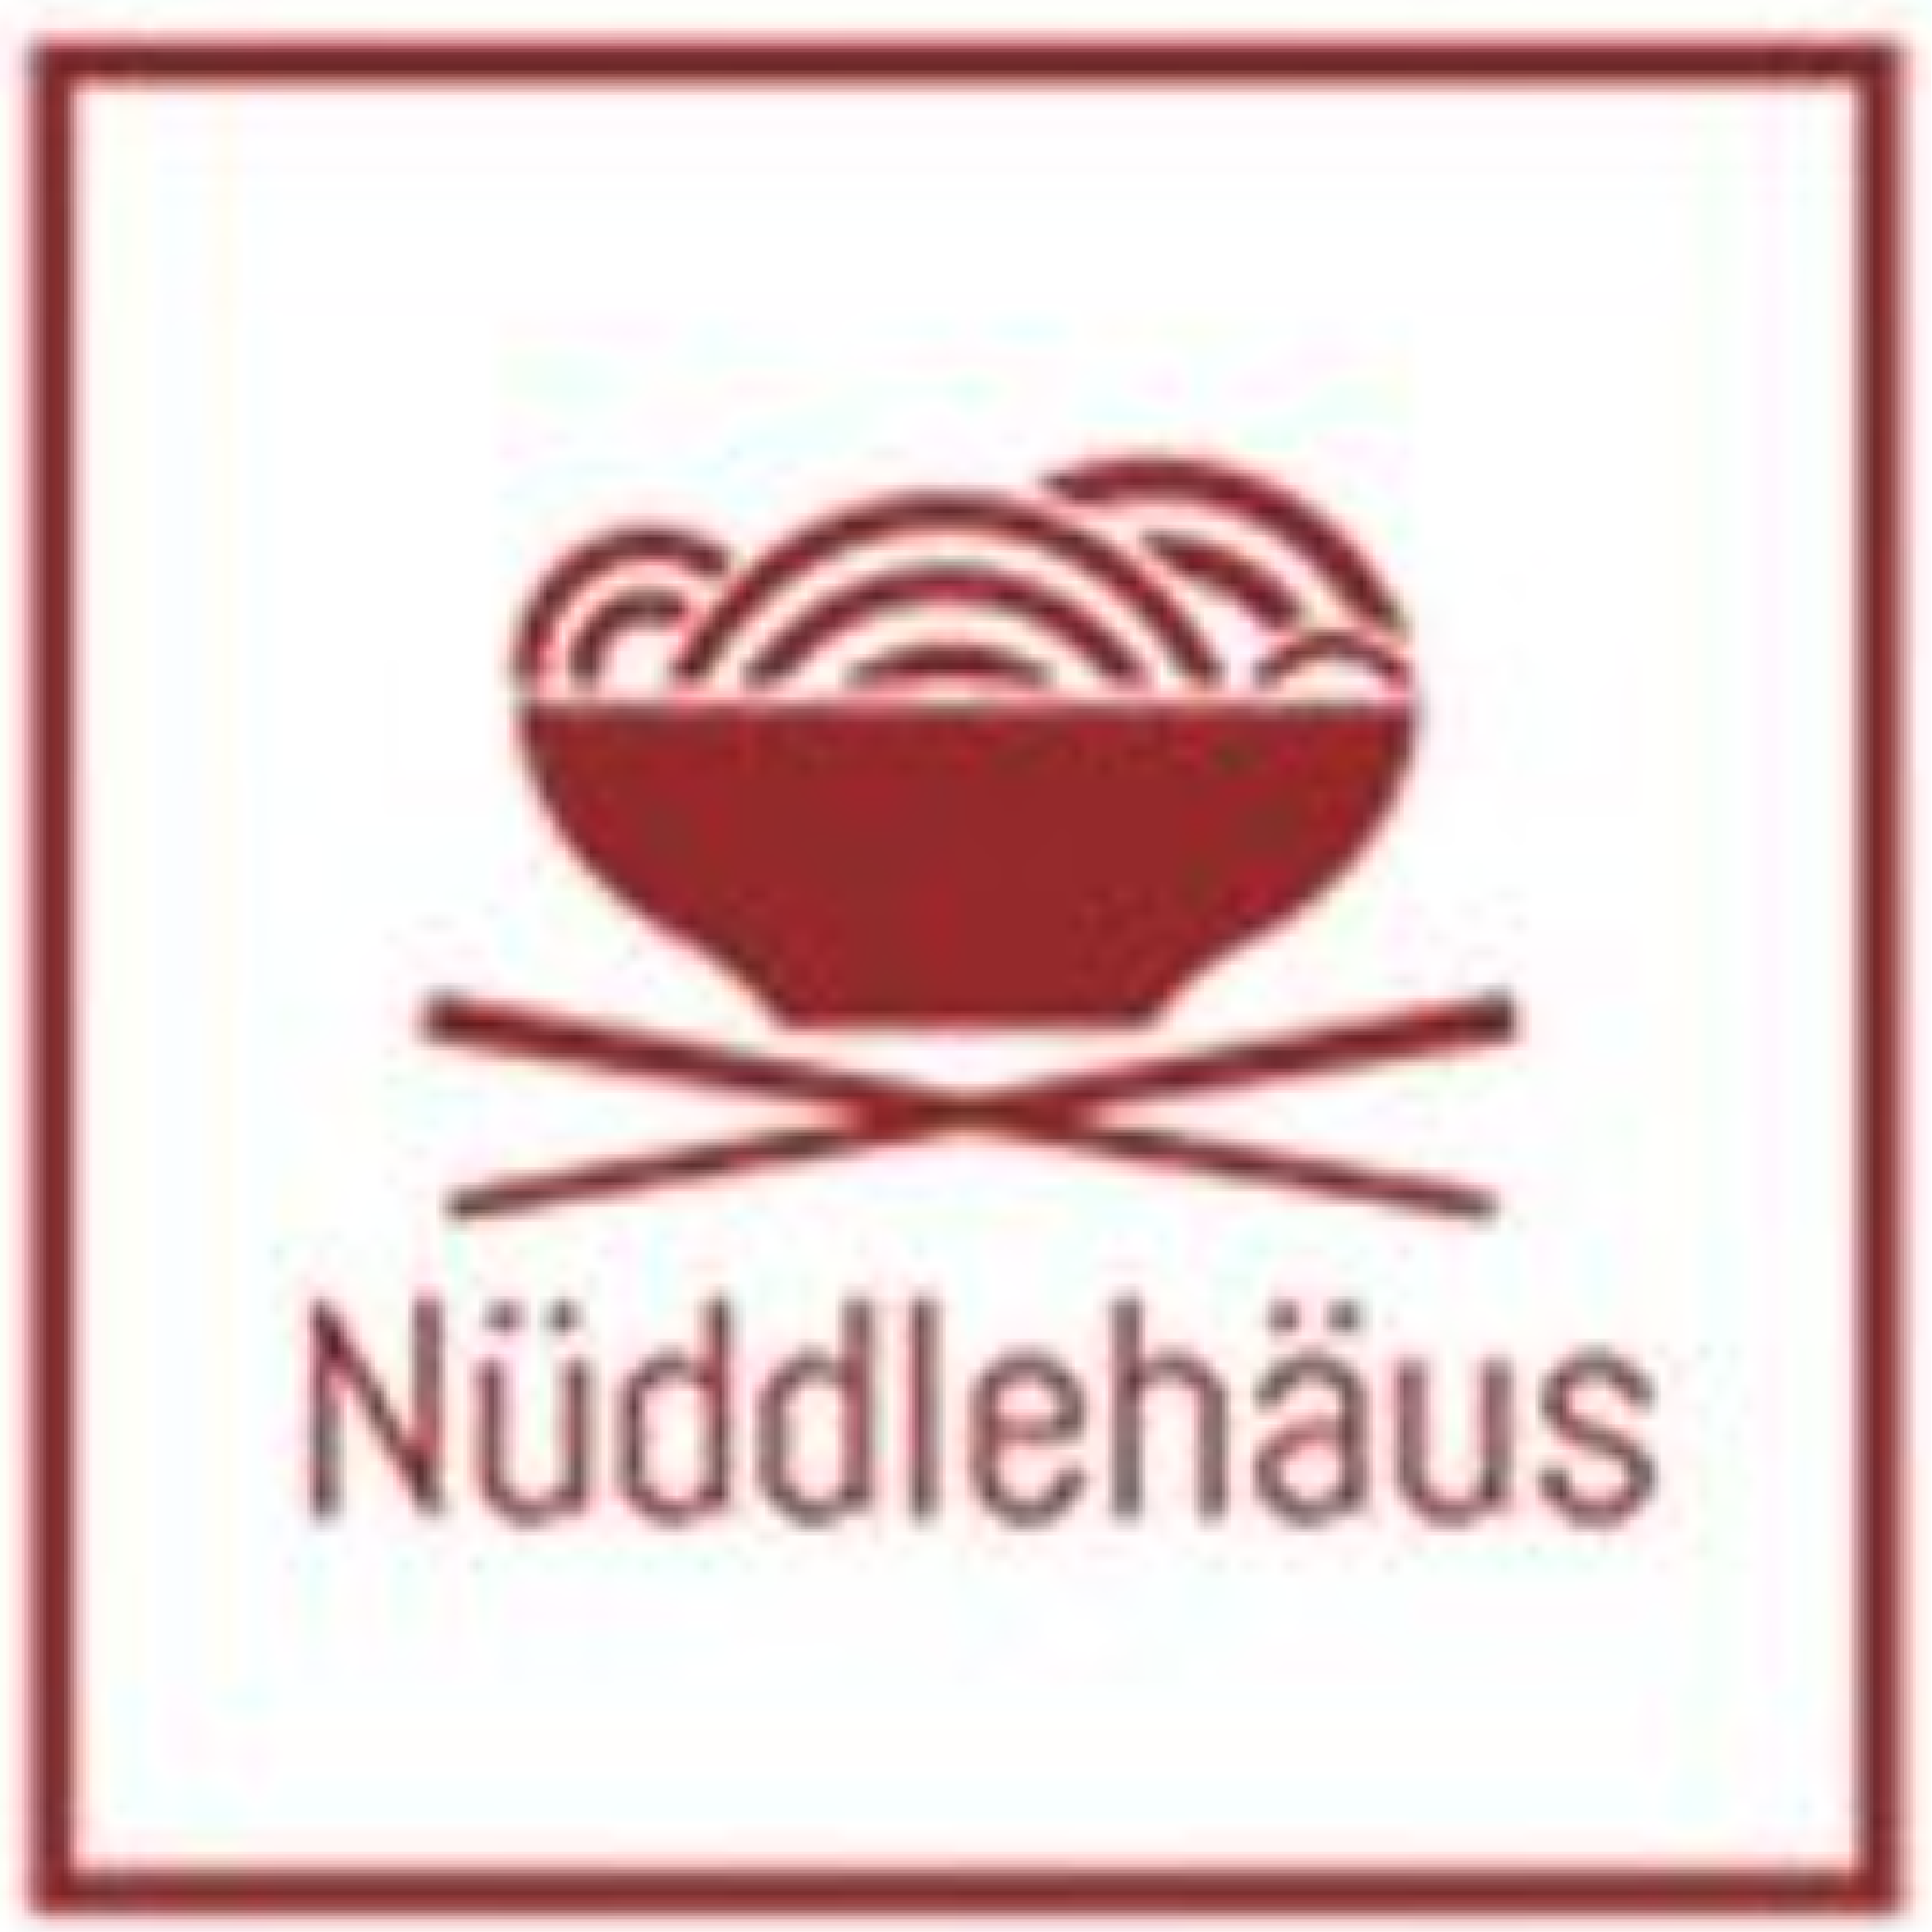 Nuddlehaus.png